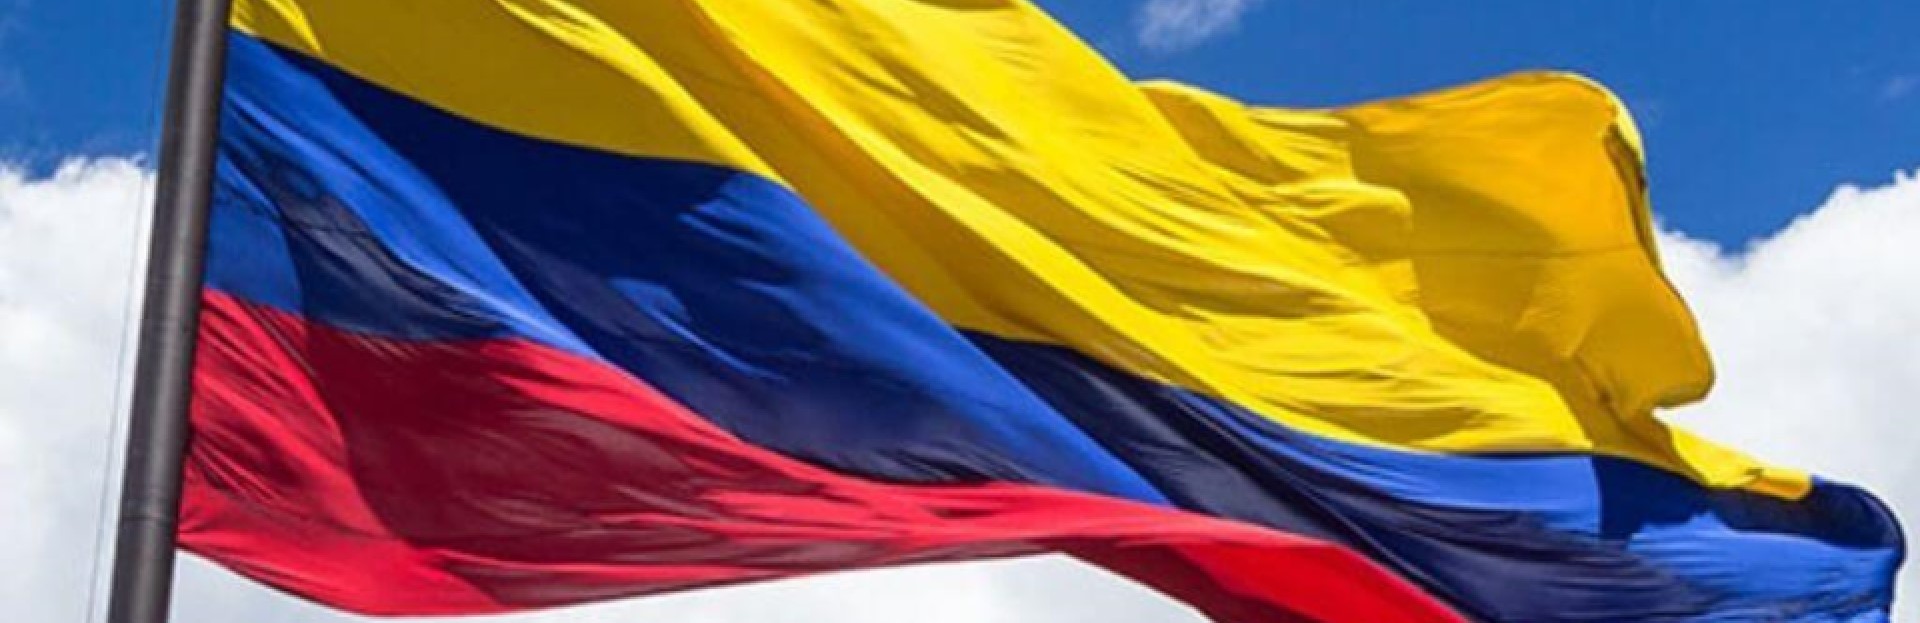 Repudio a la represión y a la violación de derechos humanos en Colombia